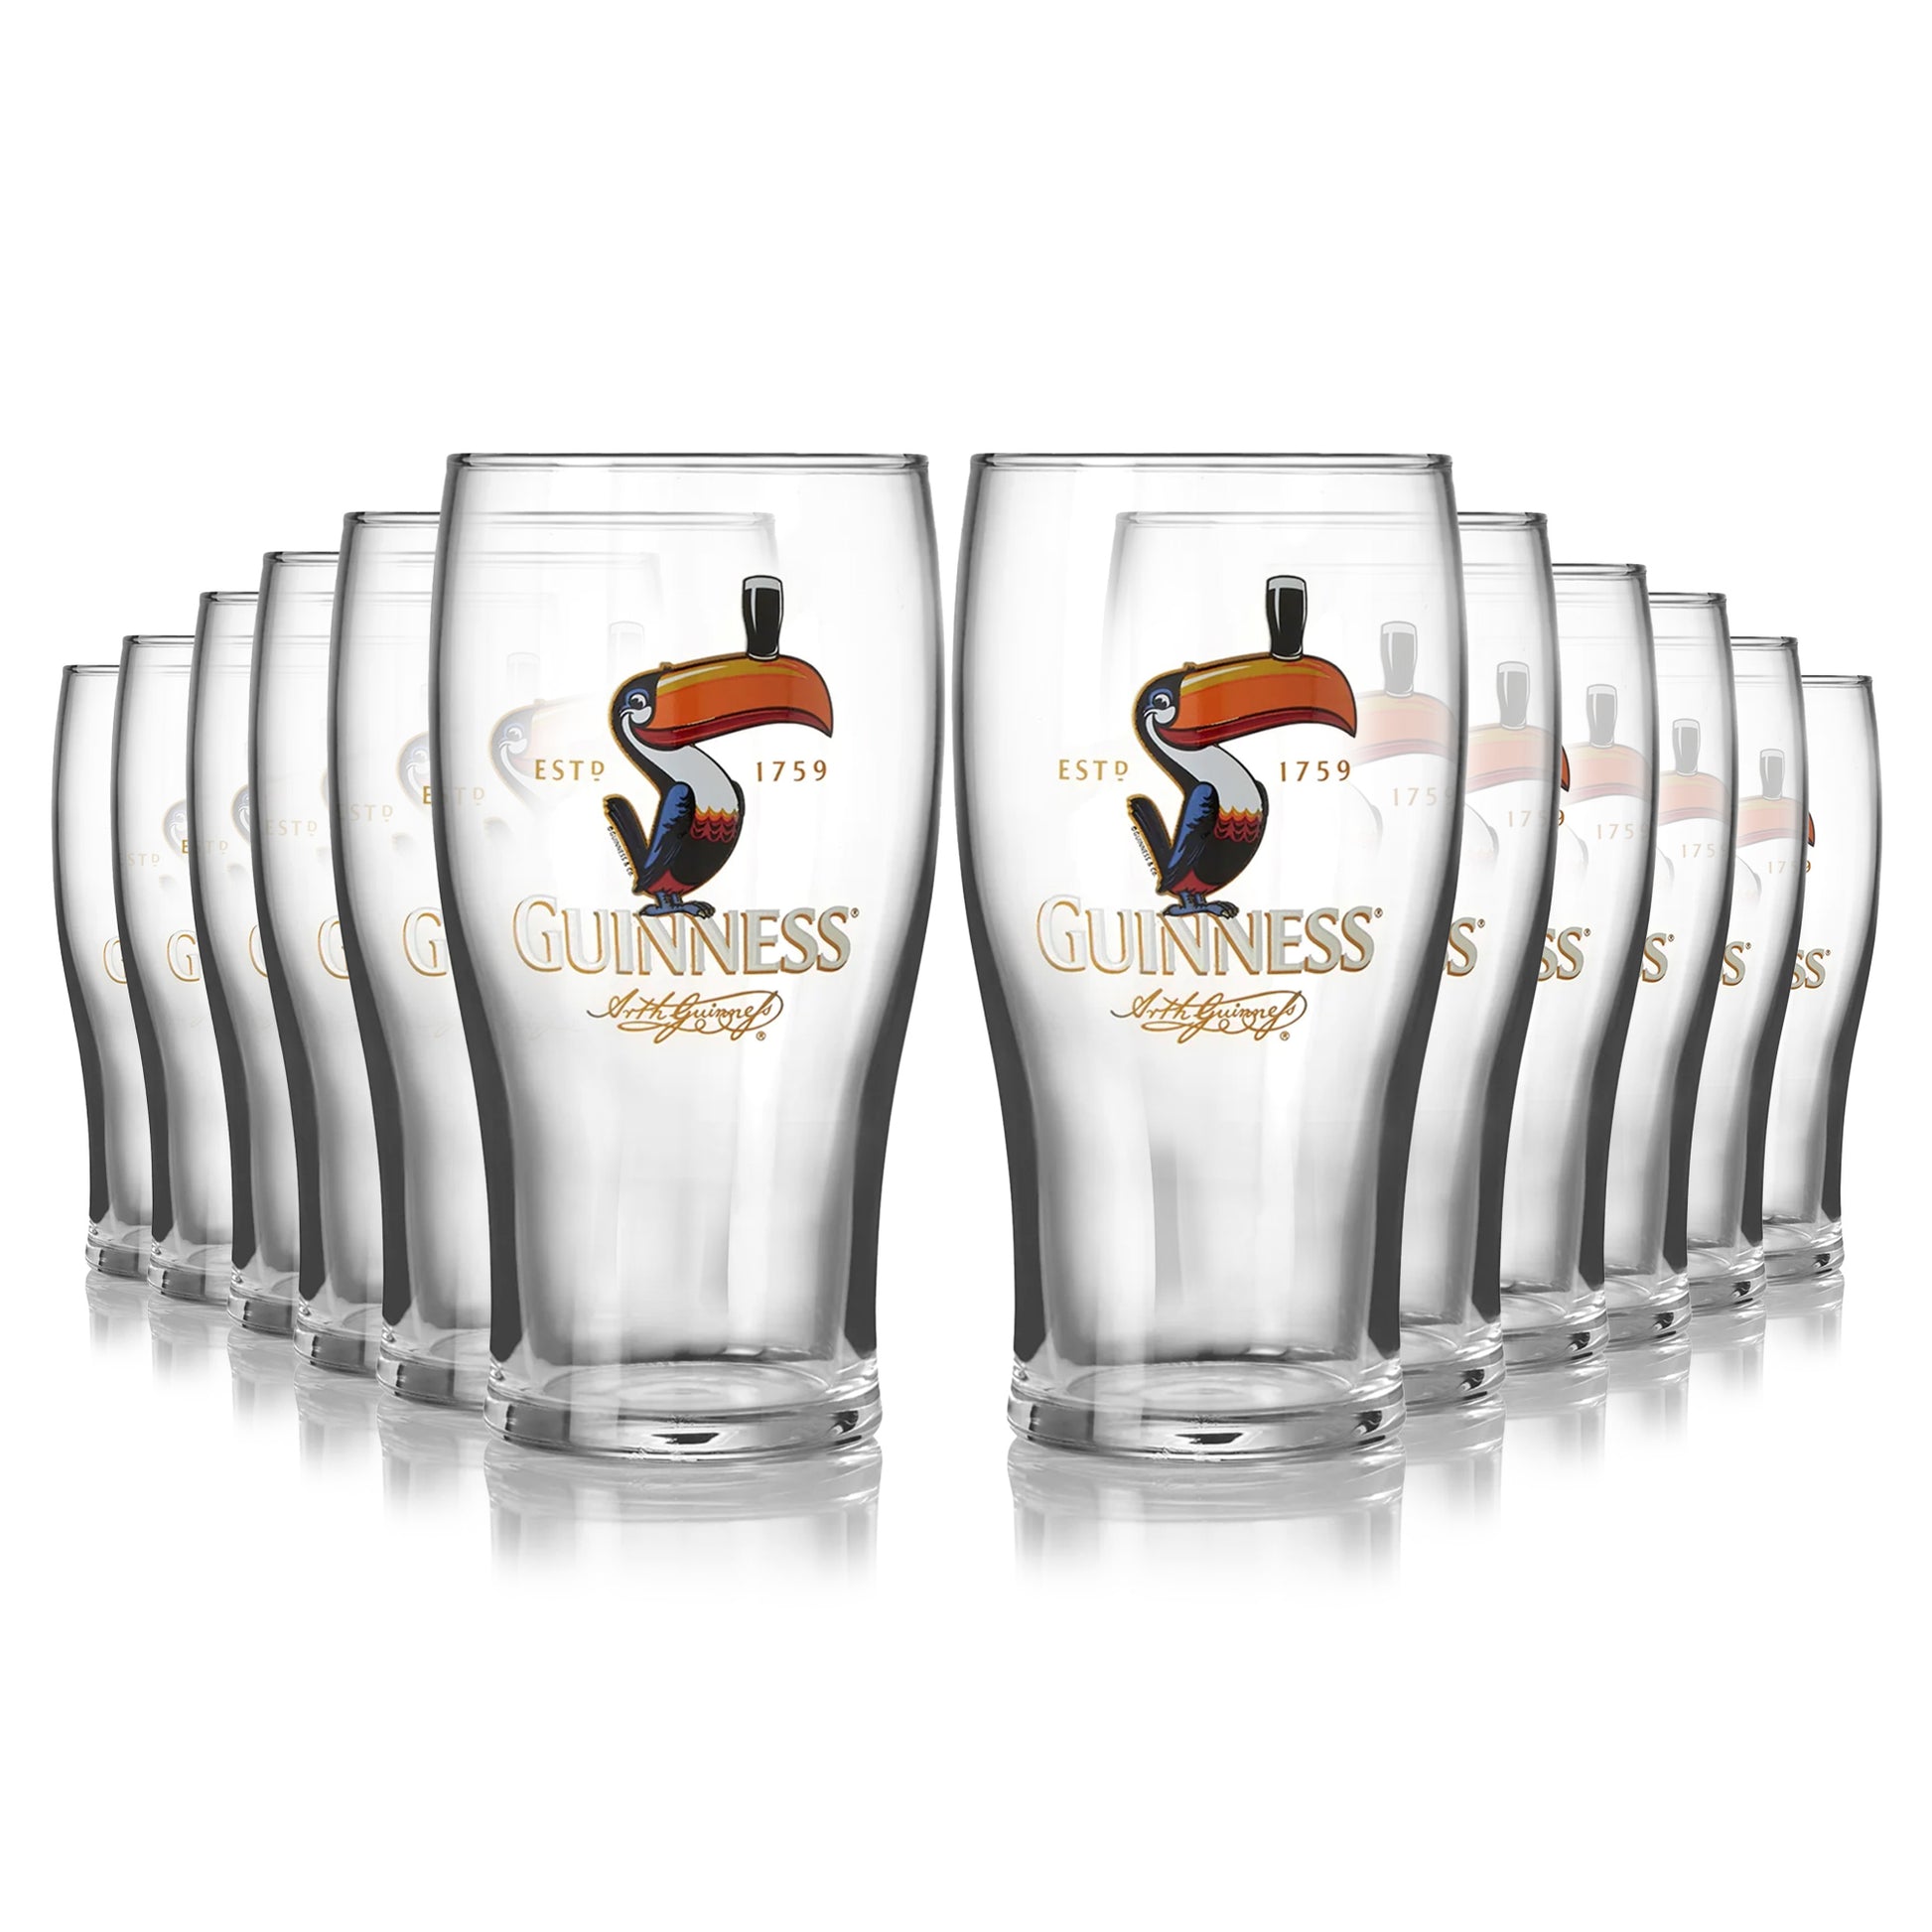 Official Guinness Pint Glasses 4 Pack, Guinness Store